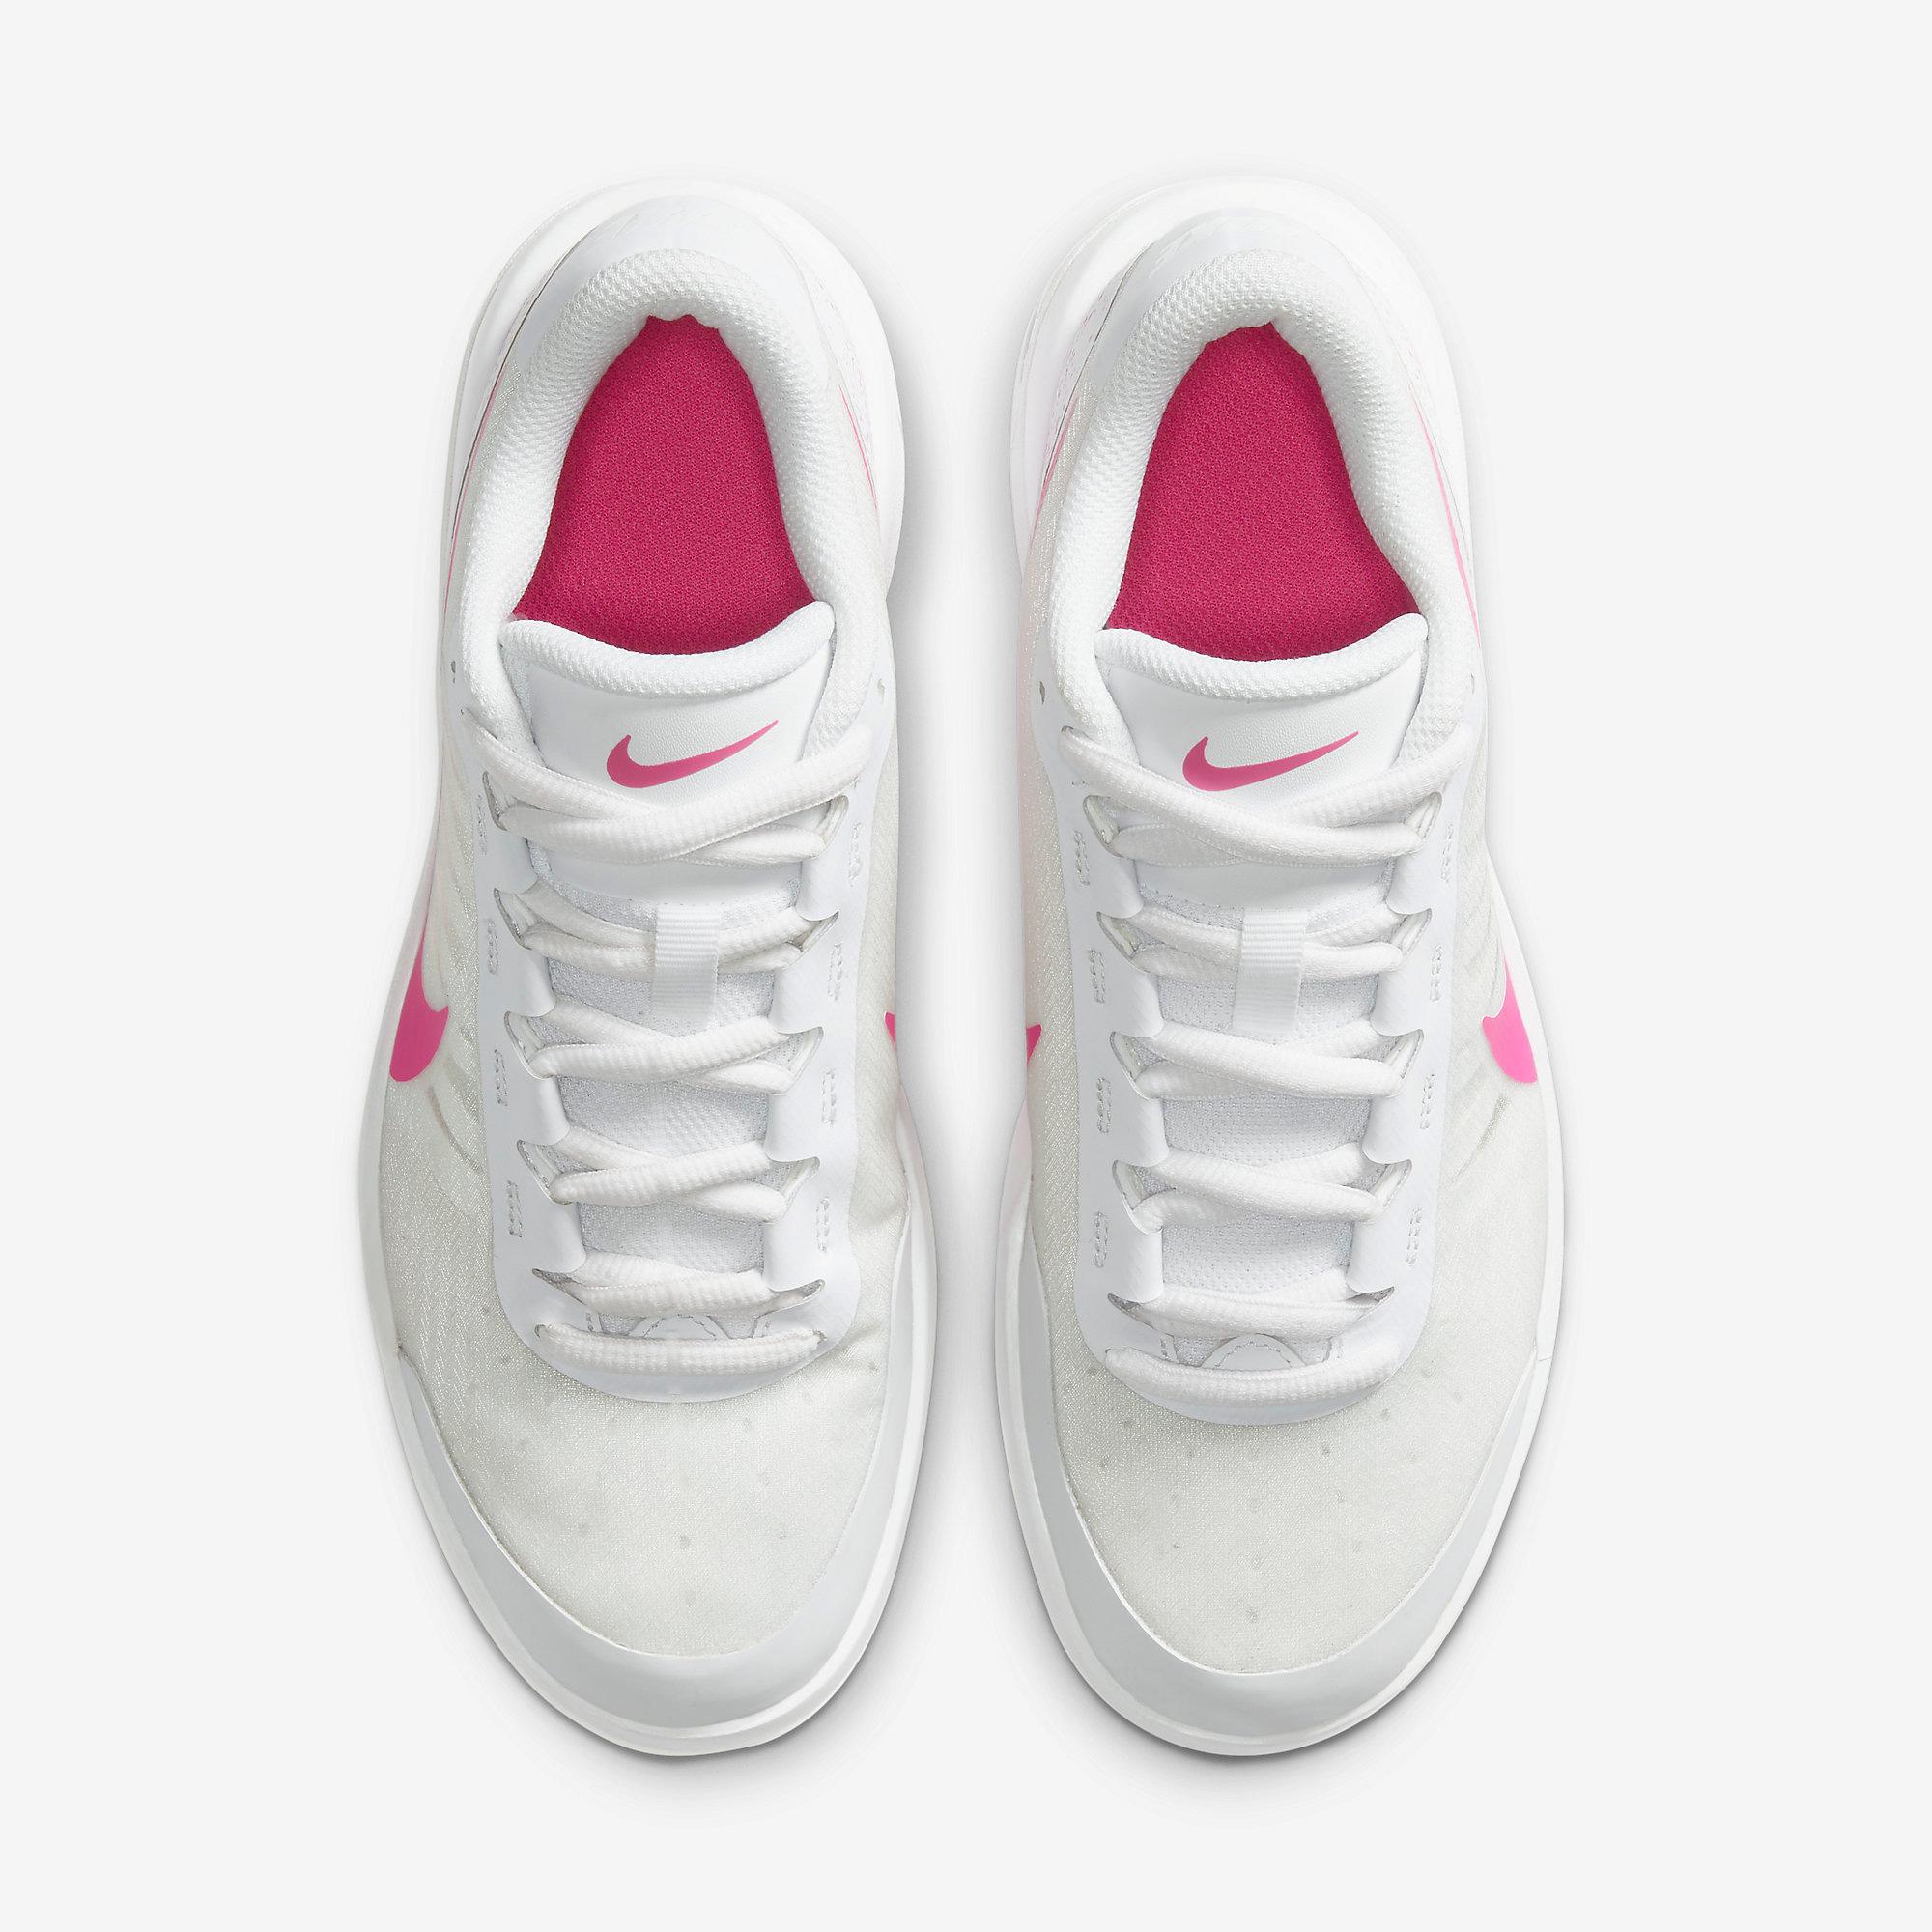 Nike Womens Air Max Vapor Wing Tennis Shoes - Laser/Fuchsia ...